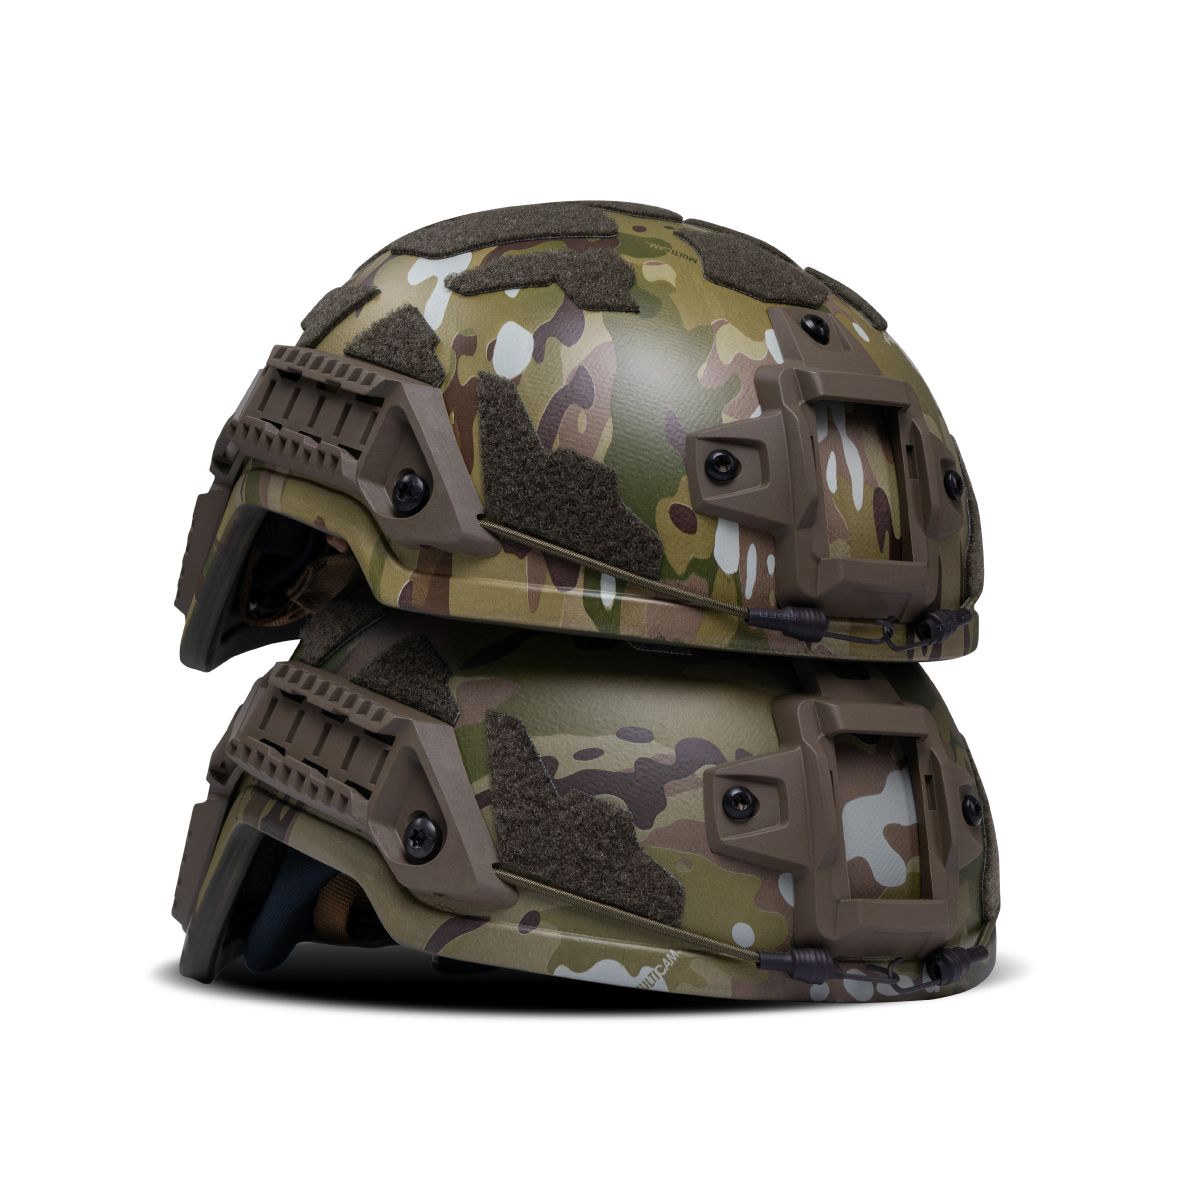 Кевларовый шлем ARCH (ECH) L с защитой от активных наушников. Мультикам 5